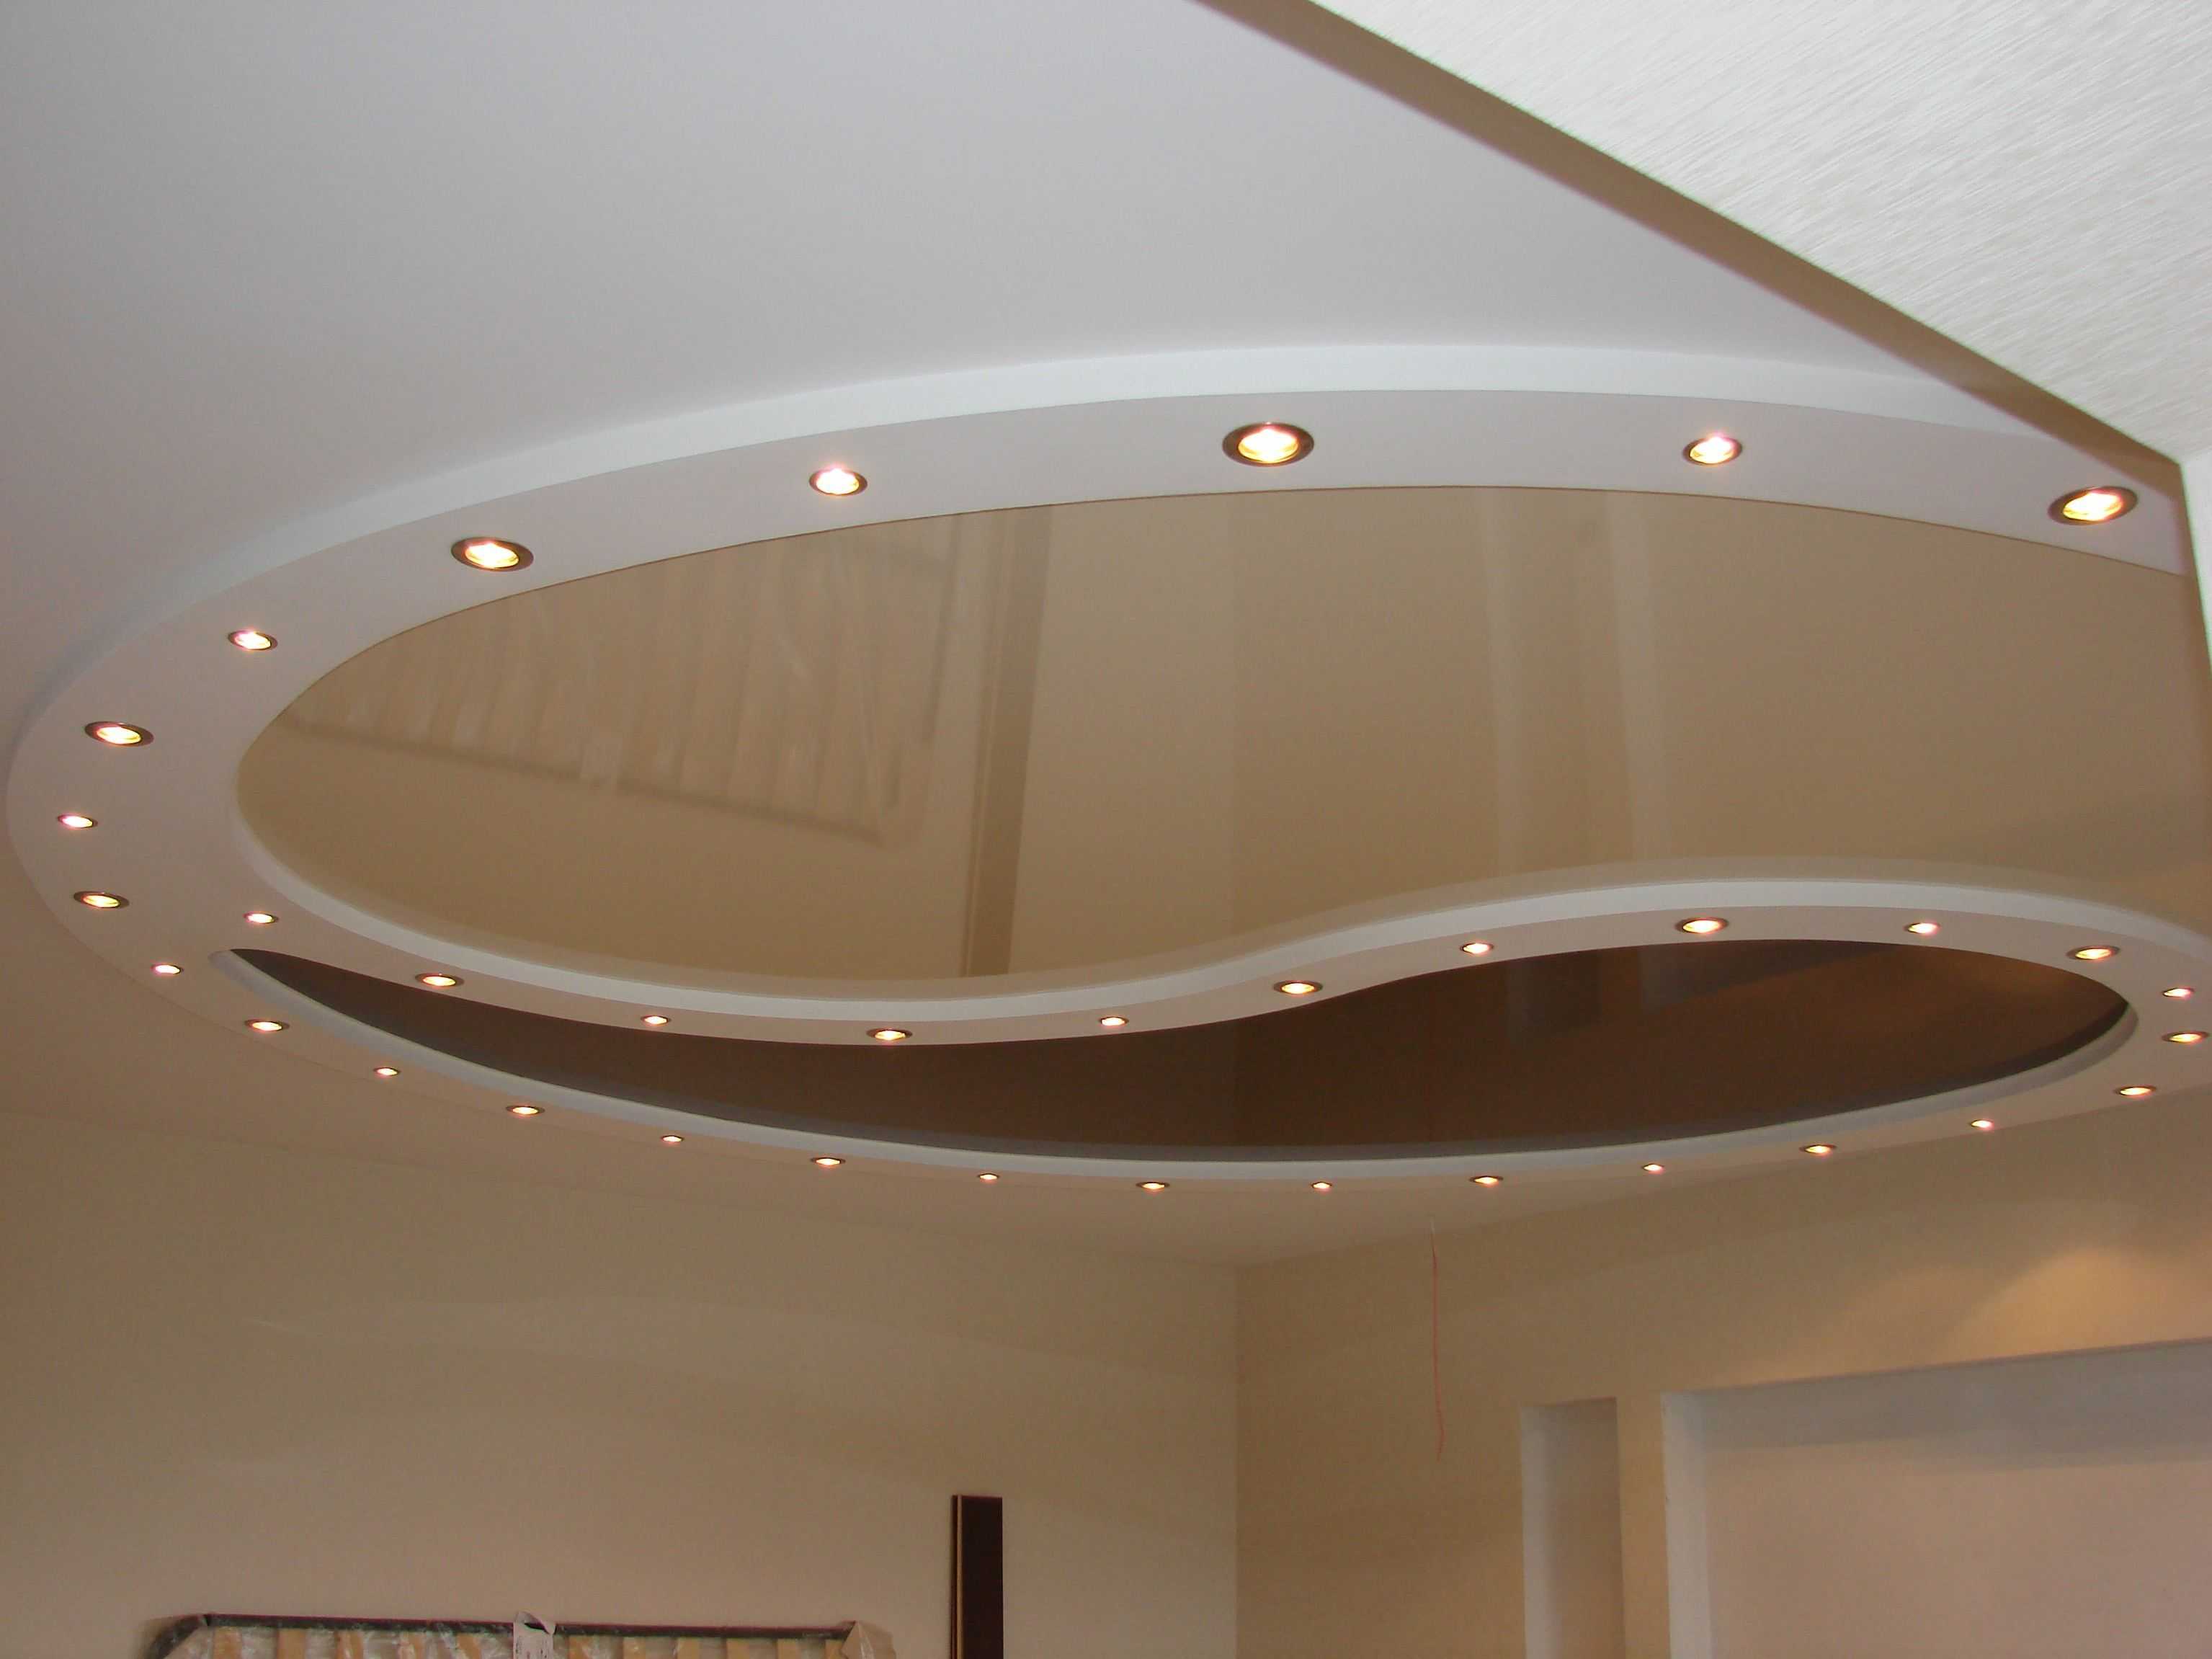 Двухуровневые натяжные потолки: монтаж конструкций в зале в 2 уровня, дизайн потолка в два уровня, каркас двух уровневый, конструкция двухъярусного потолка по периметру